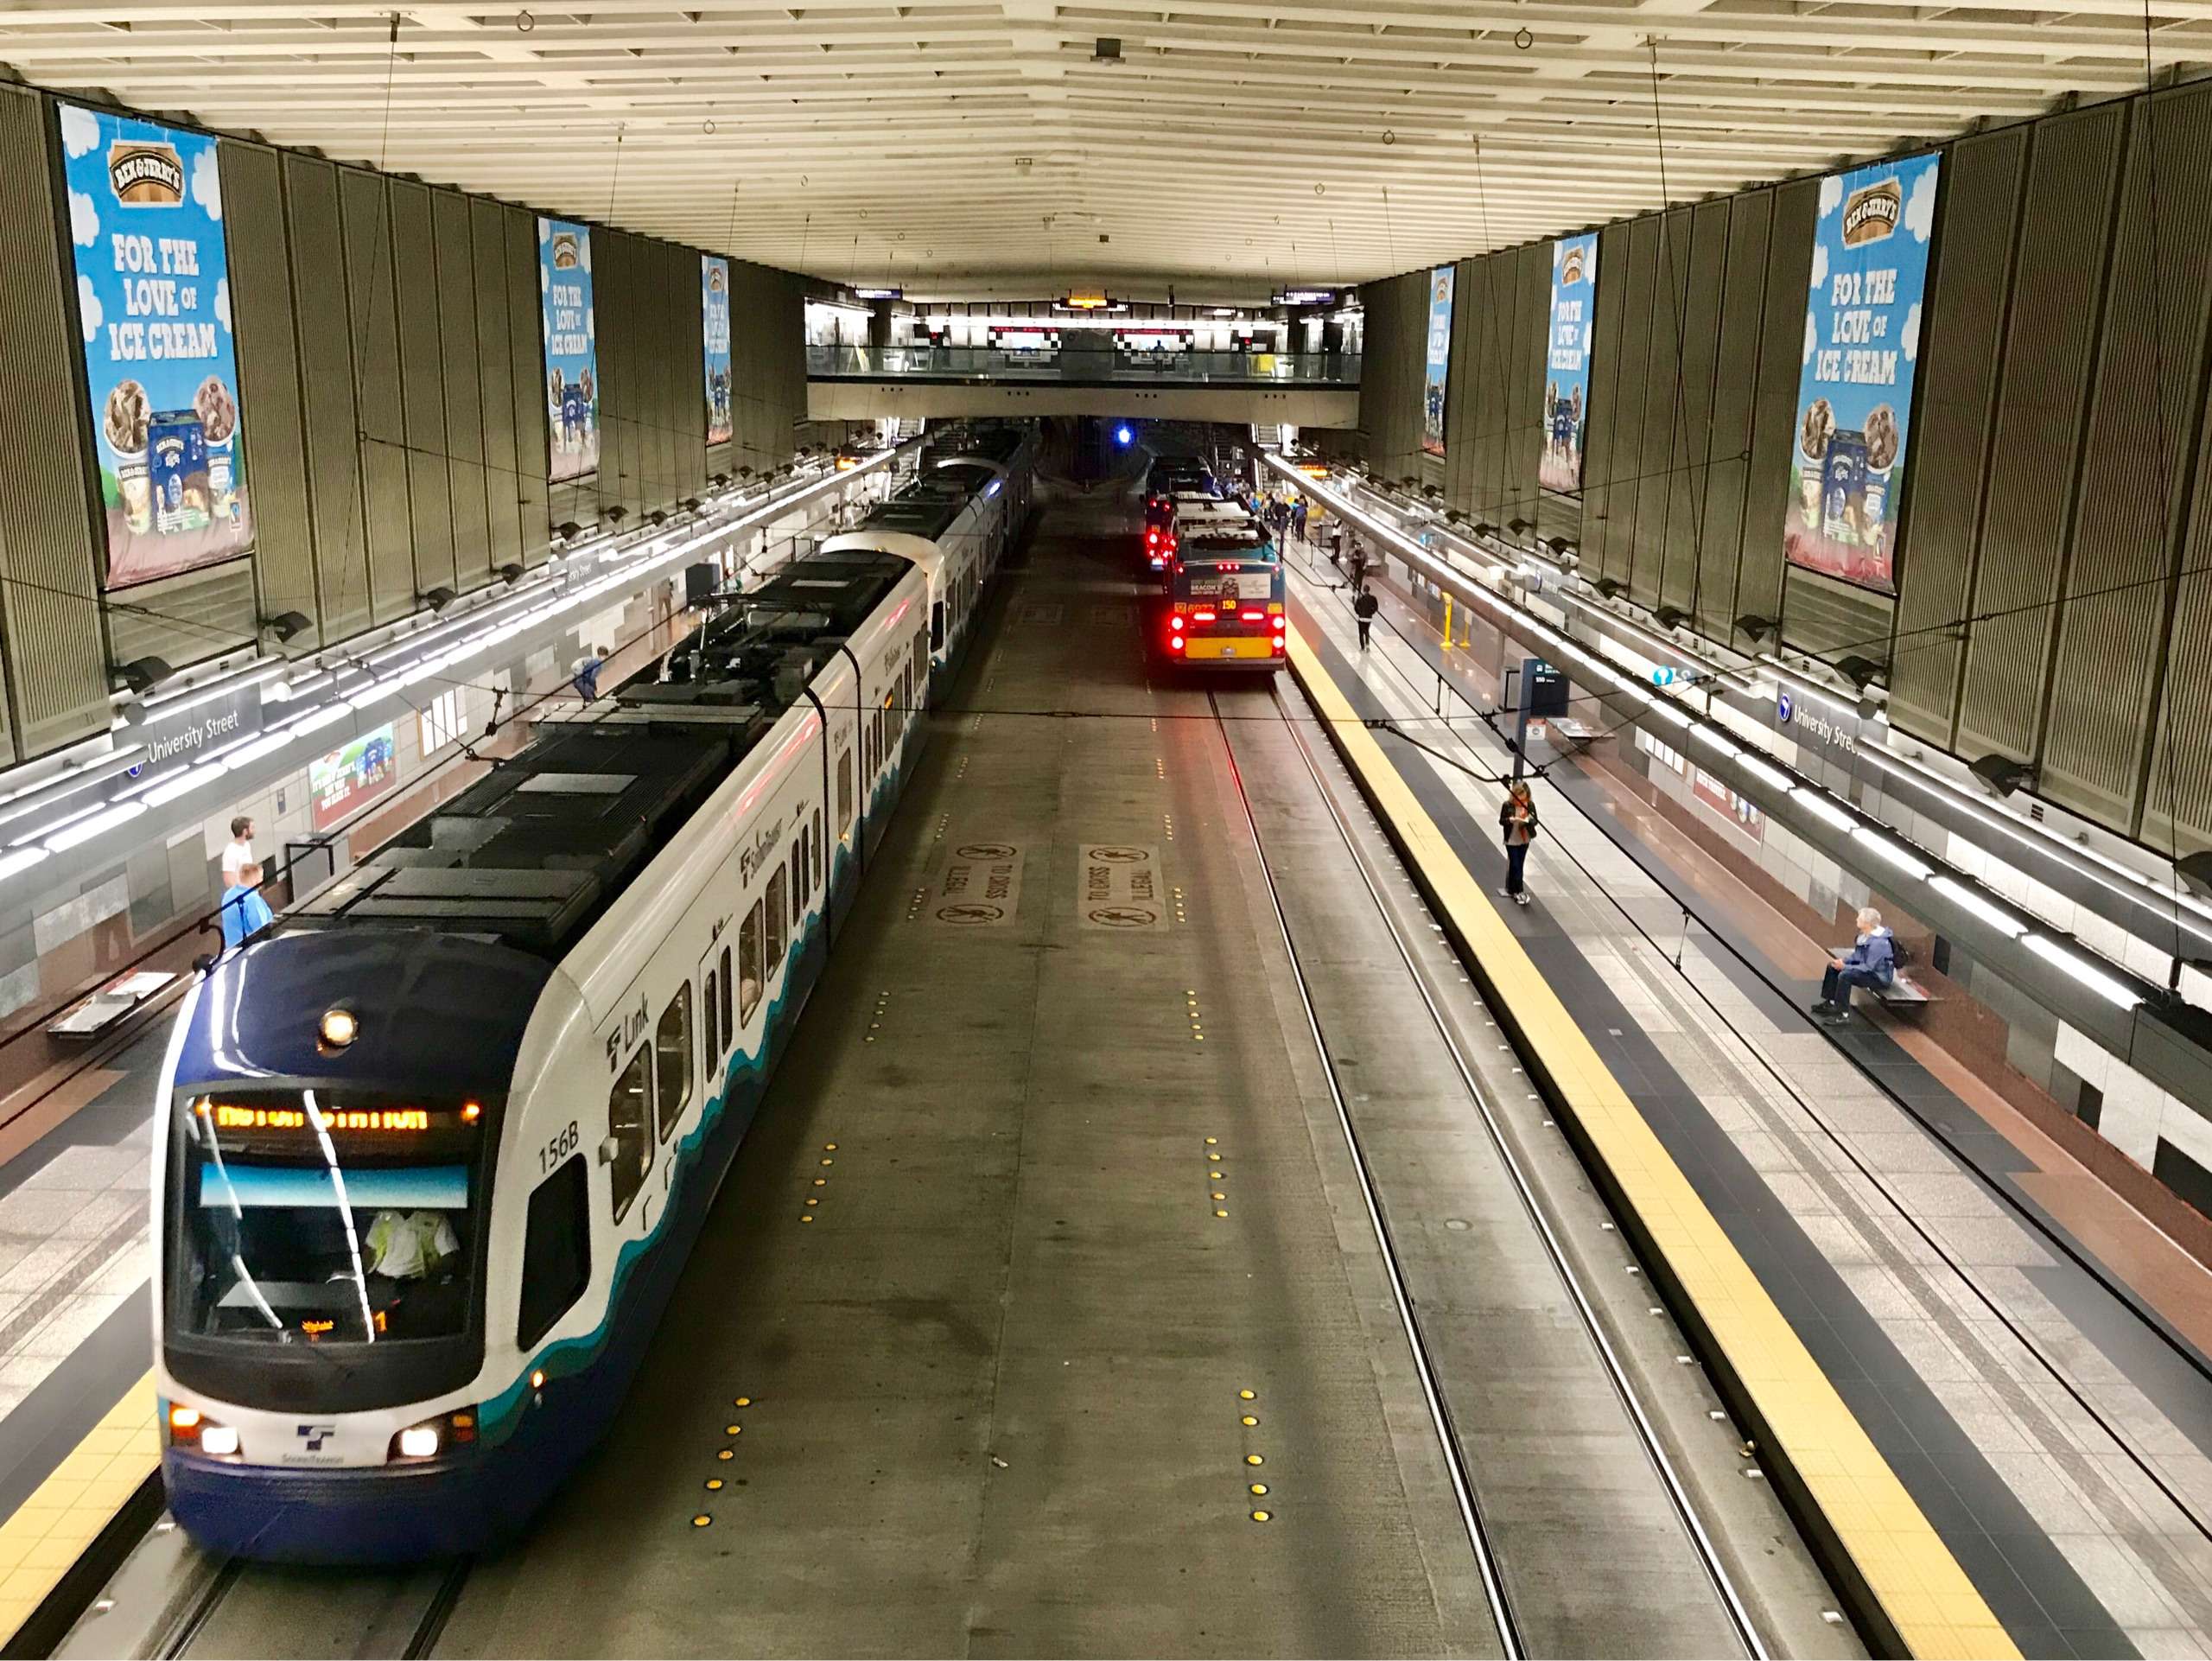 西雅图地下交通系统,轻轨和公交车的共用空间